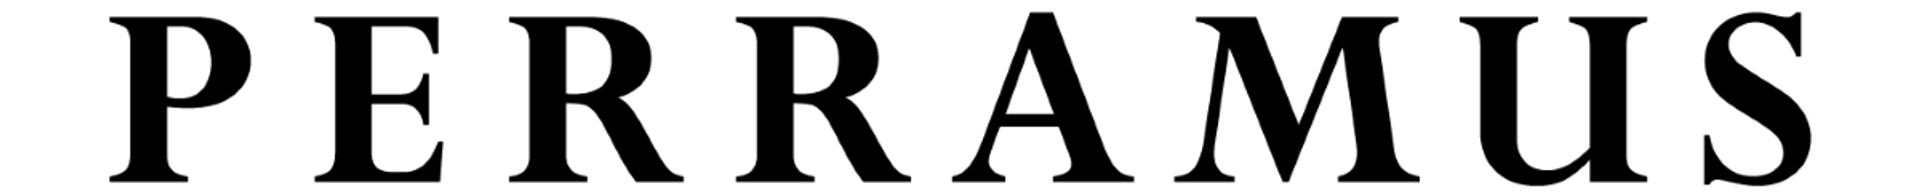 PERRAMUS logo de catálogo